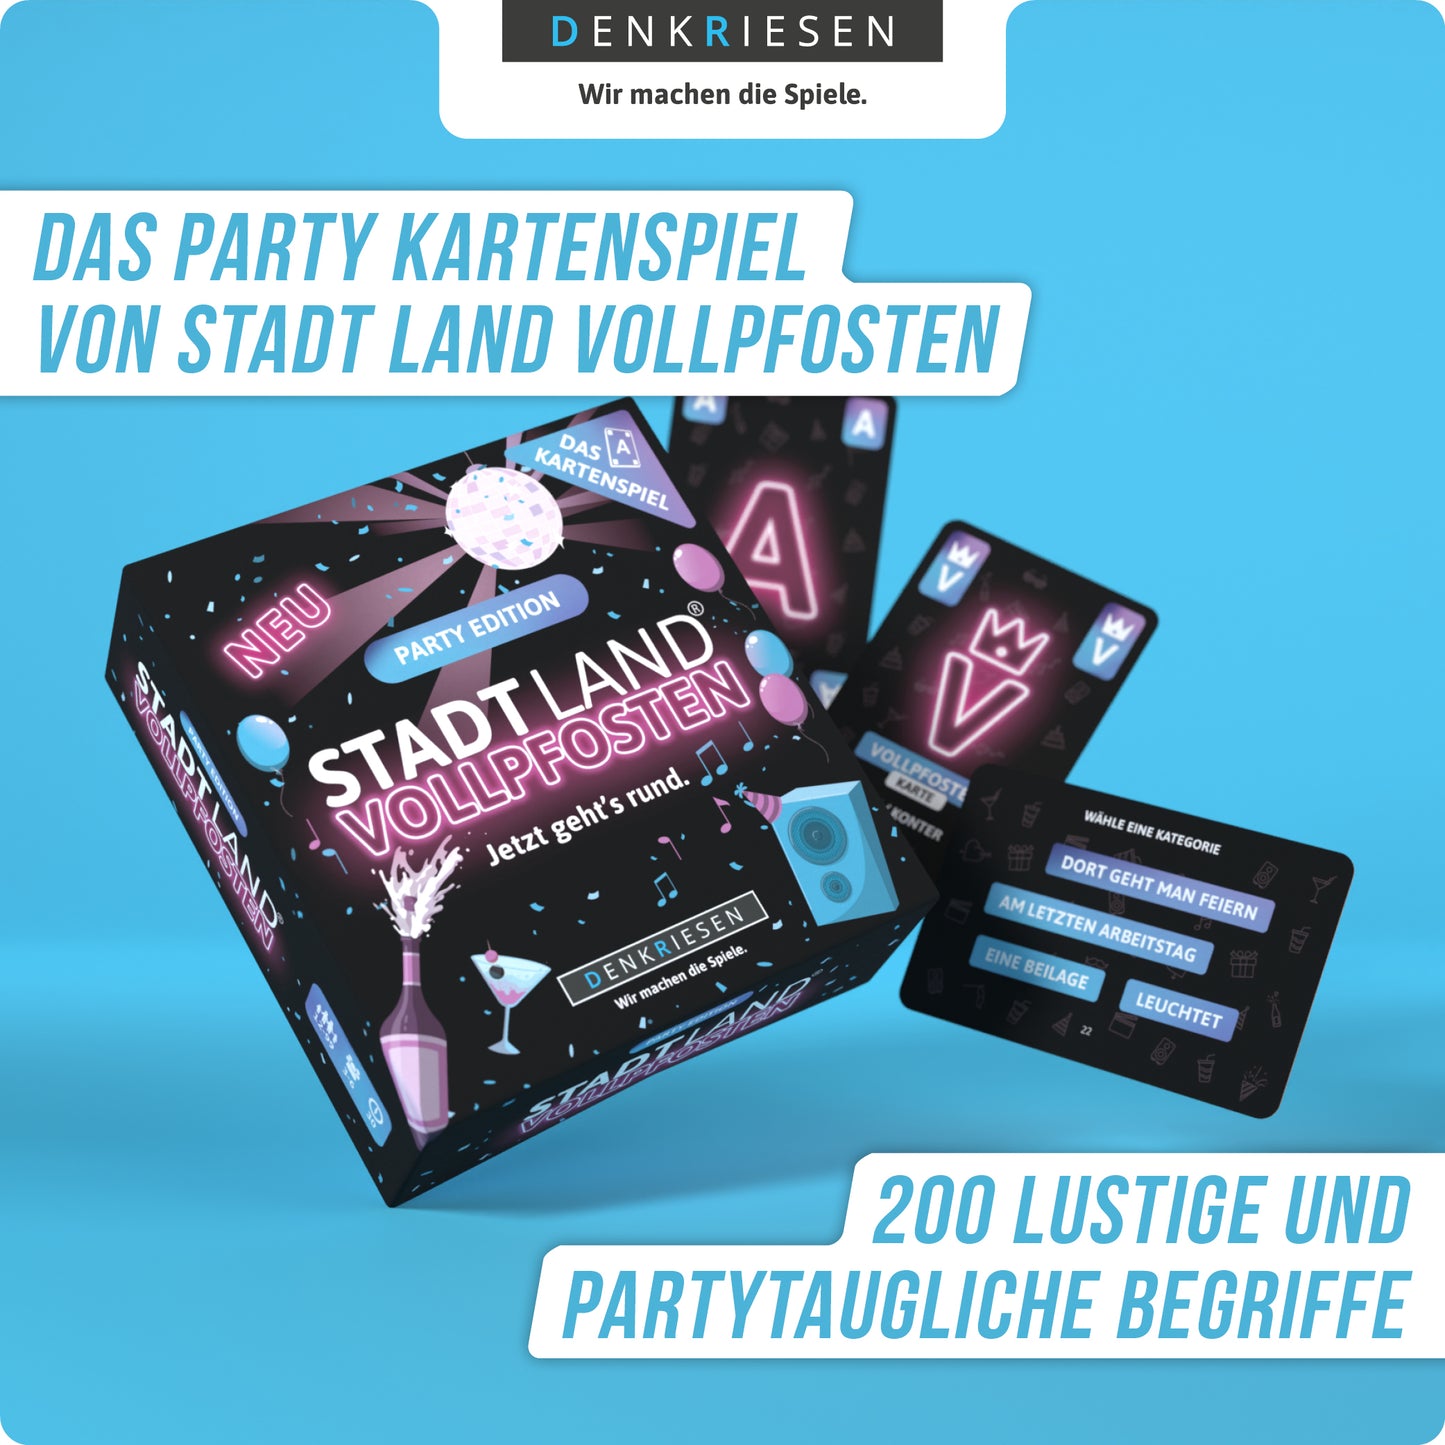 Stadt Land Vollpfosten - Party Edition